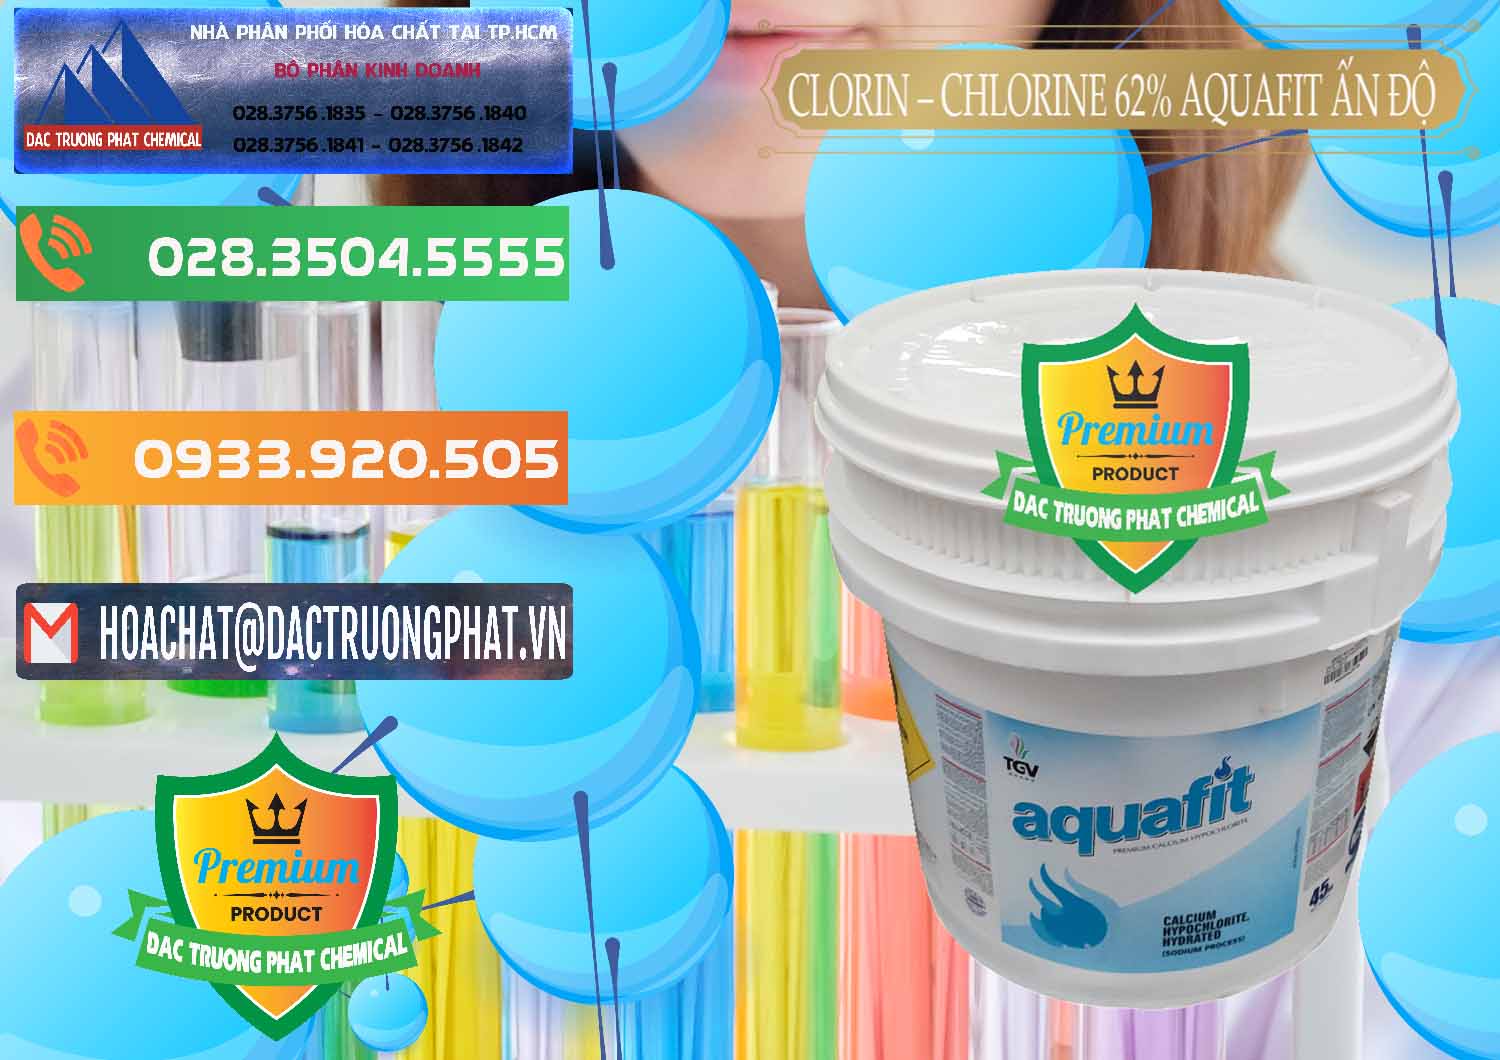 Cty kinh doanh ( bán ) Clorin - Chlorine 62% Aquafit Thùng Lùn Ấn Độ India - 0057 - Đơn vị kinh doanh - phân phối hóa chất tại TP.HCM - hoachatxulynuoc.com.vn